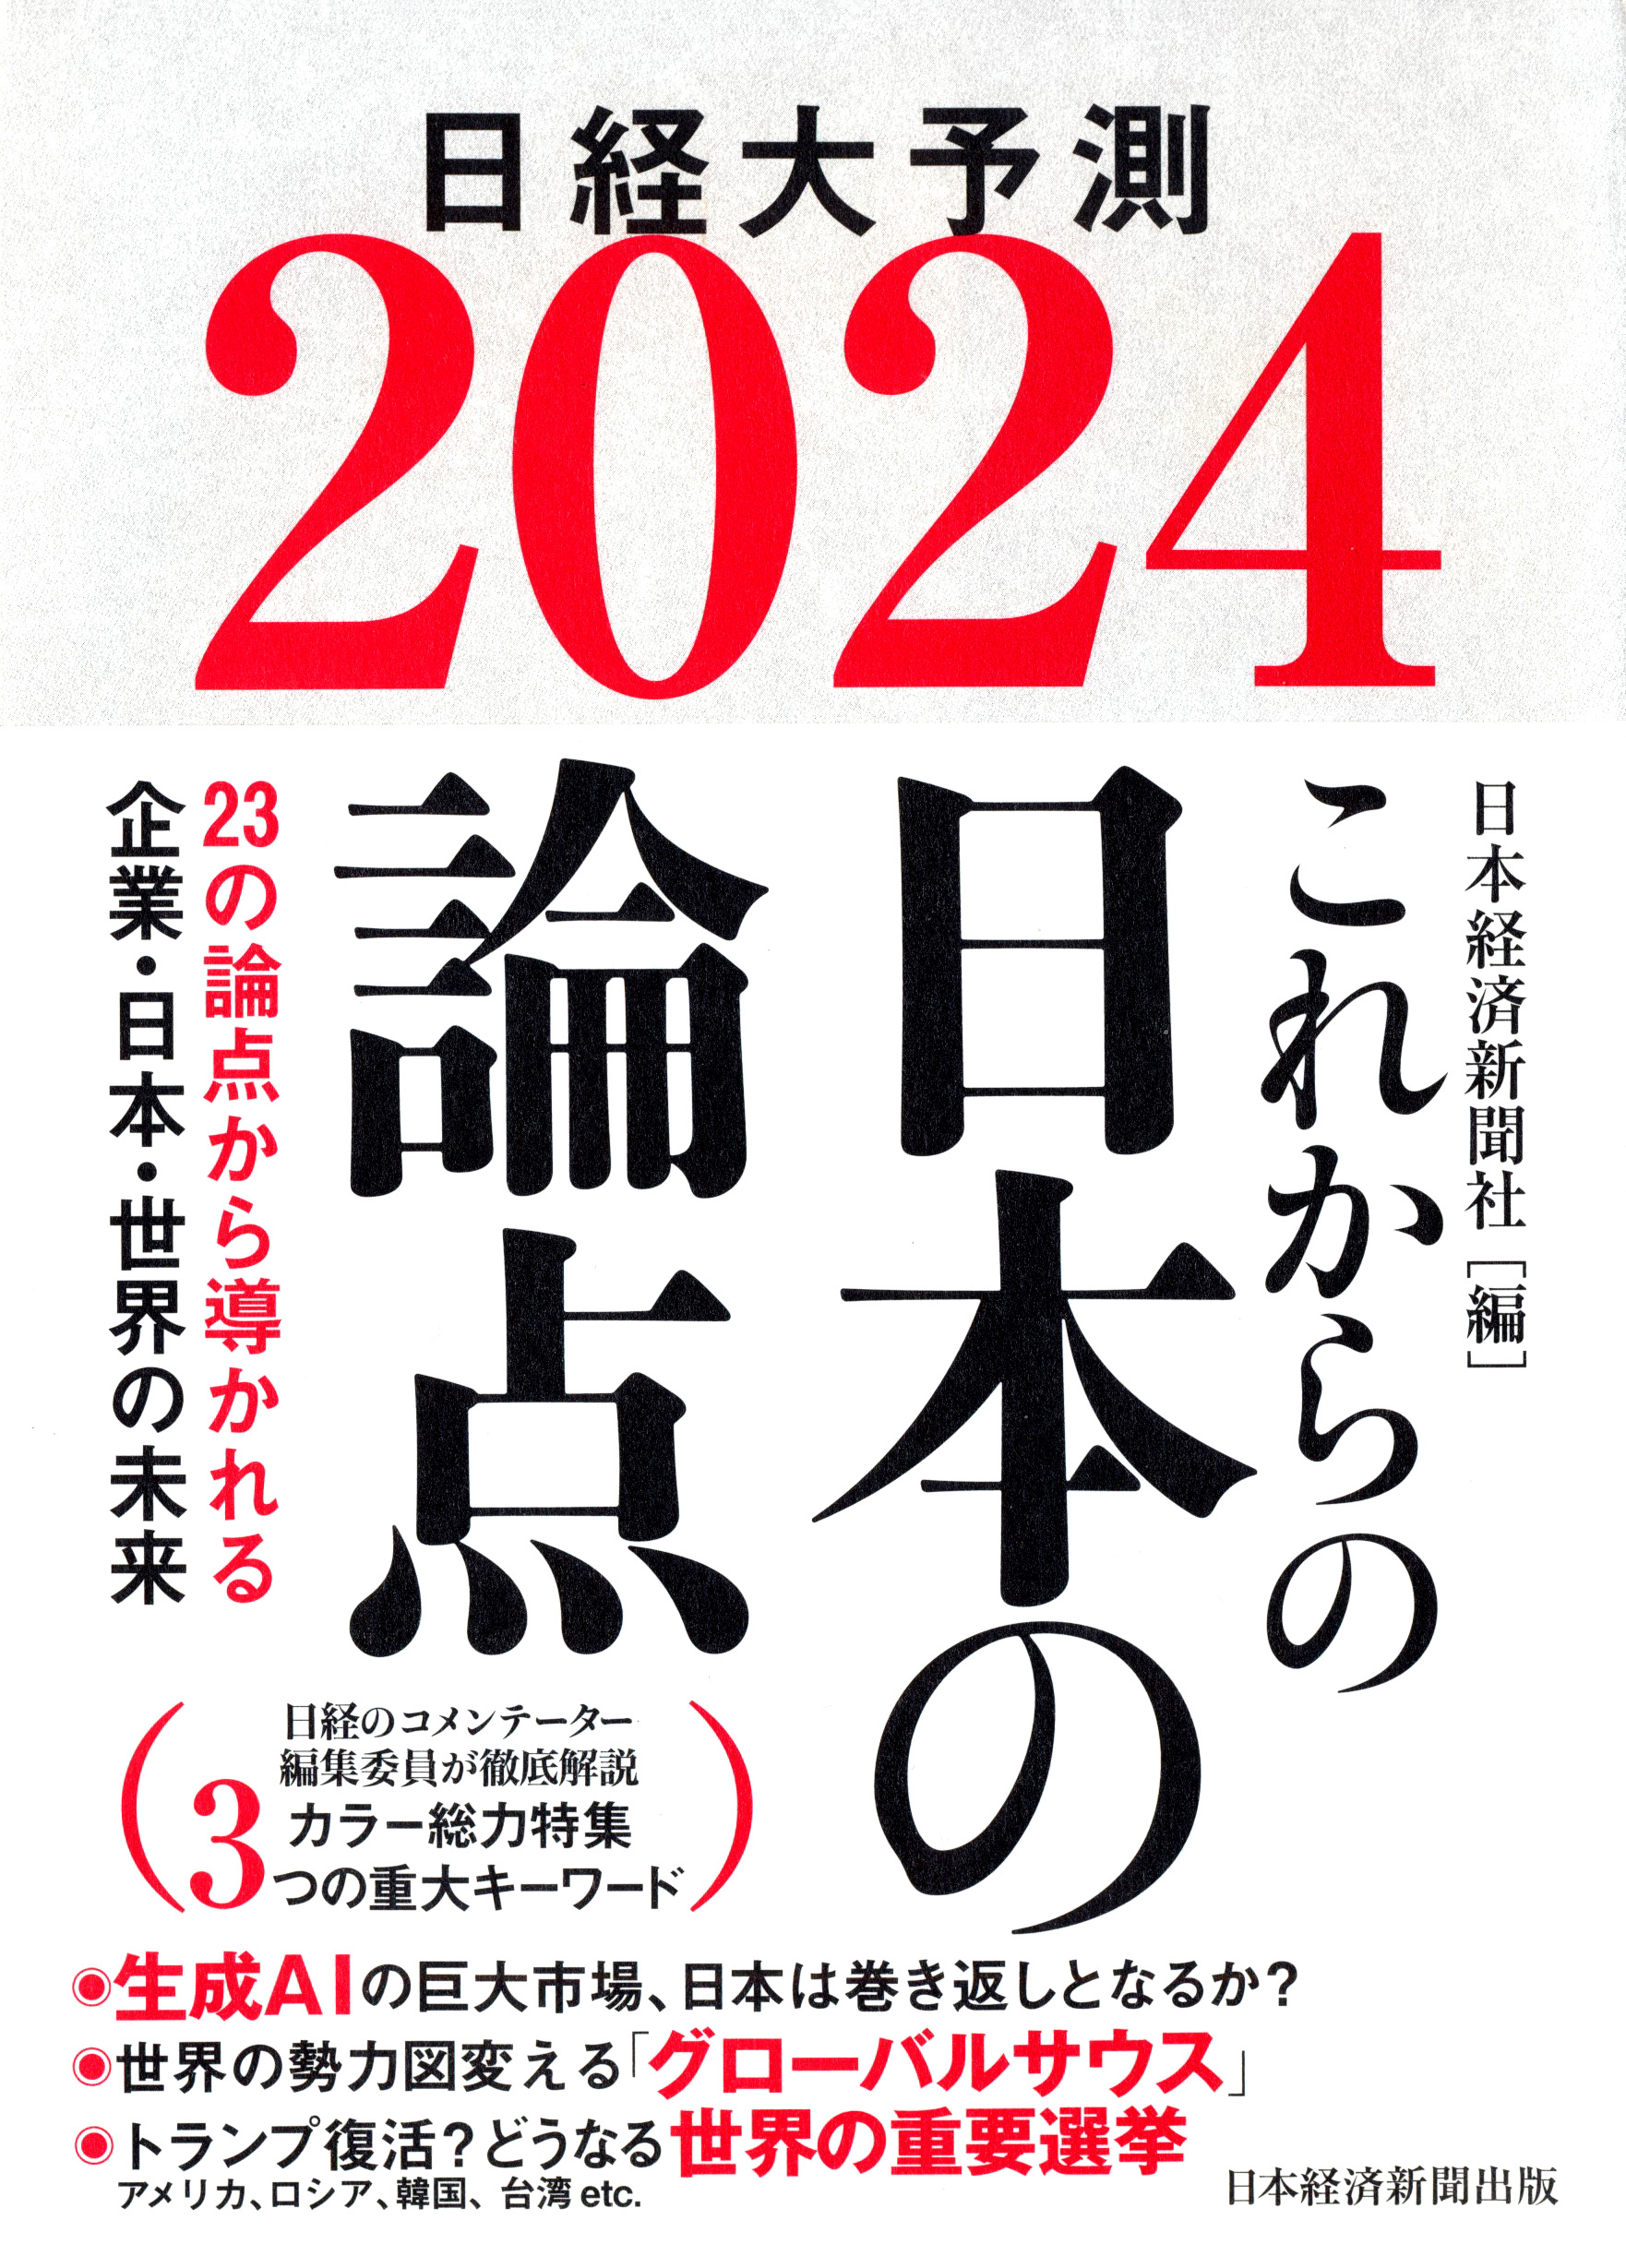 『これからの日本の論点2024』